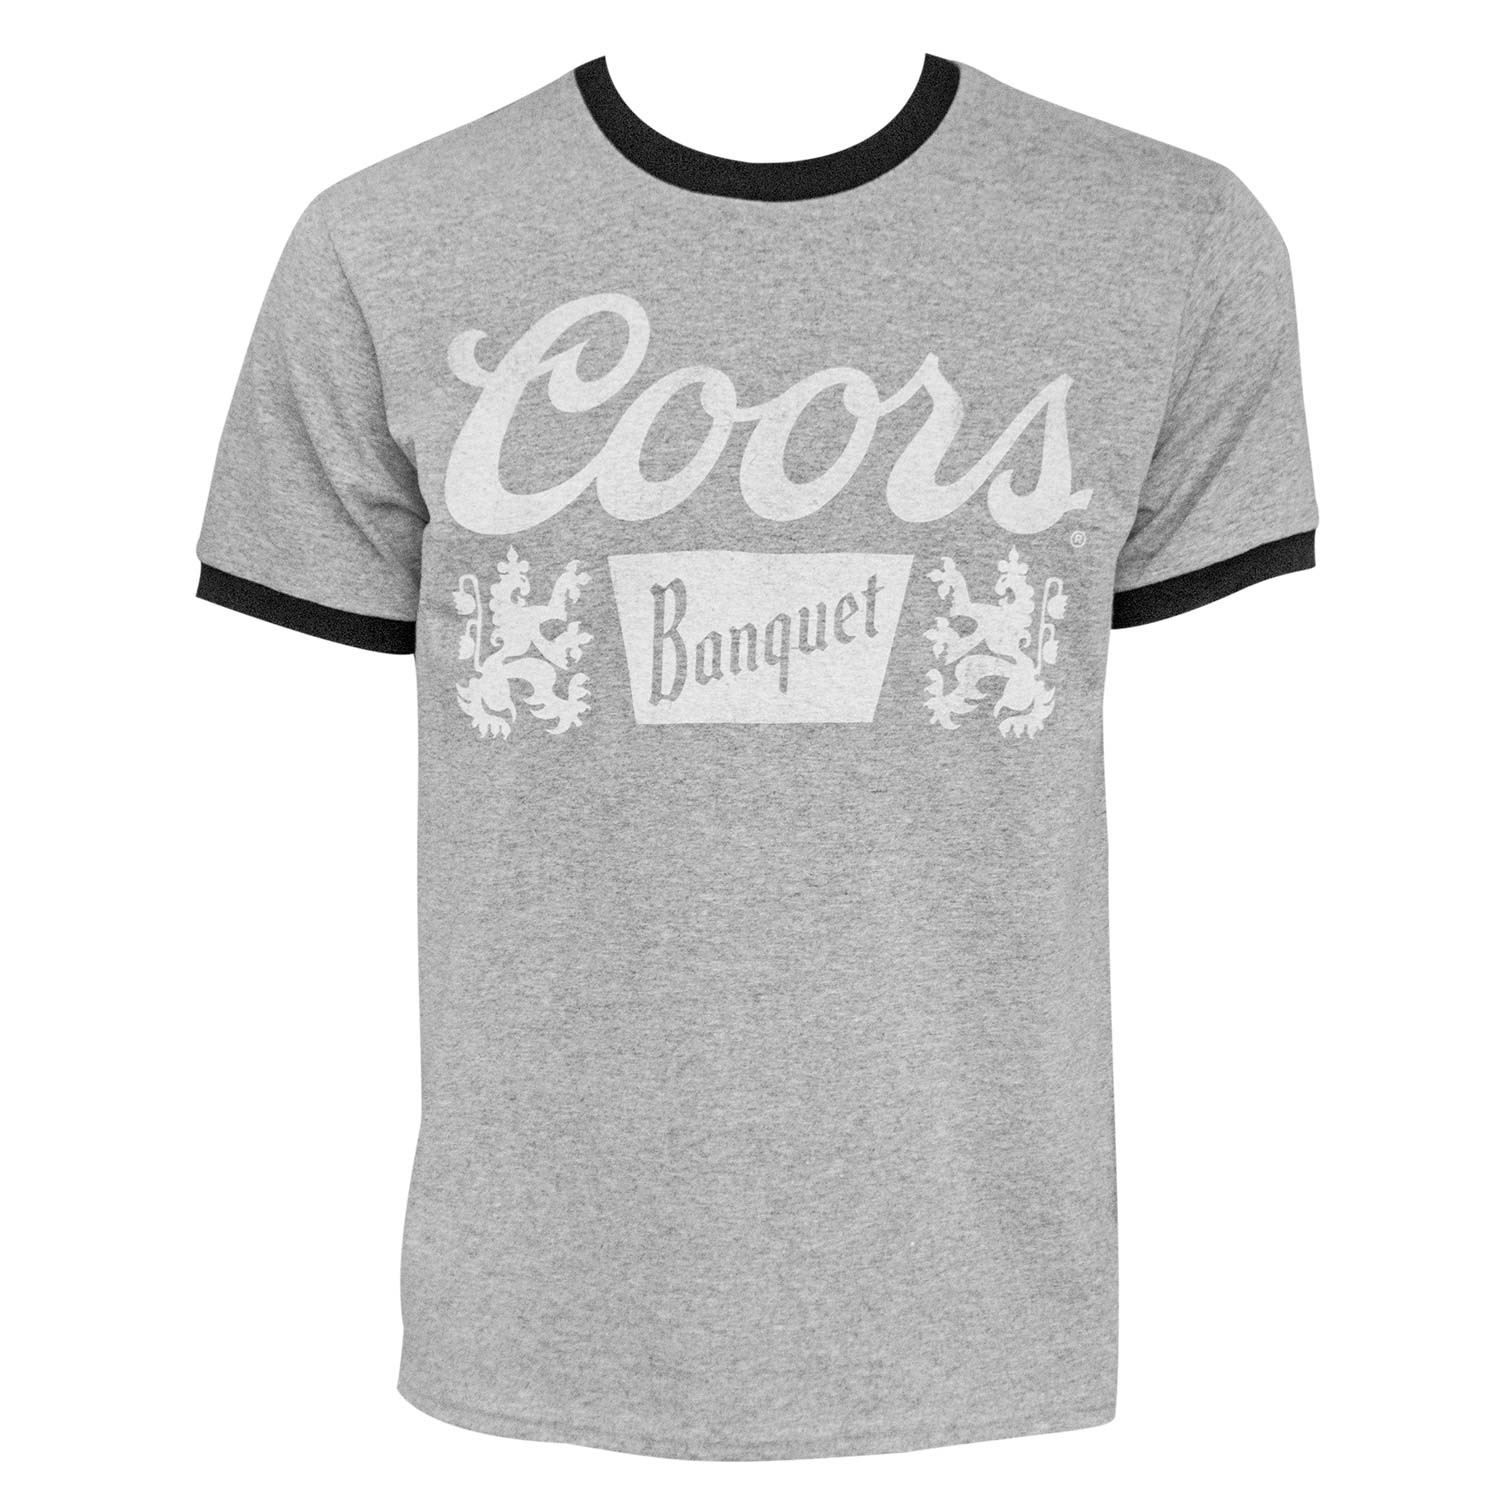 Coors Banquet Logo Men's Gray Ringer T-Shirt